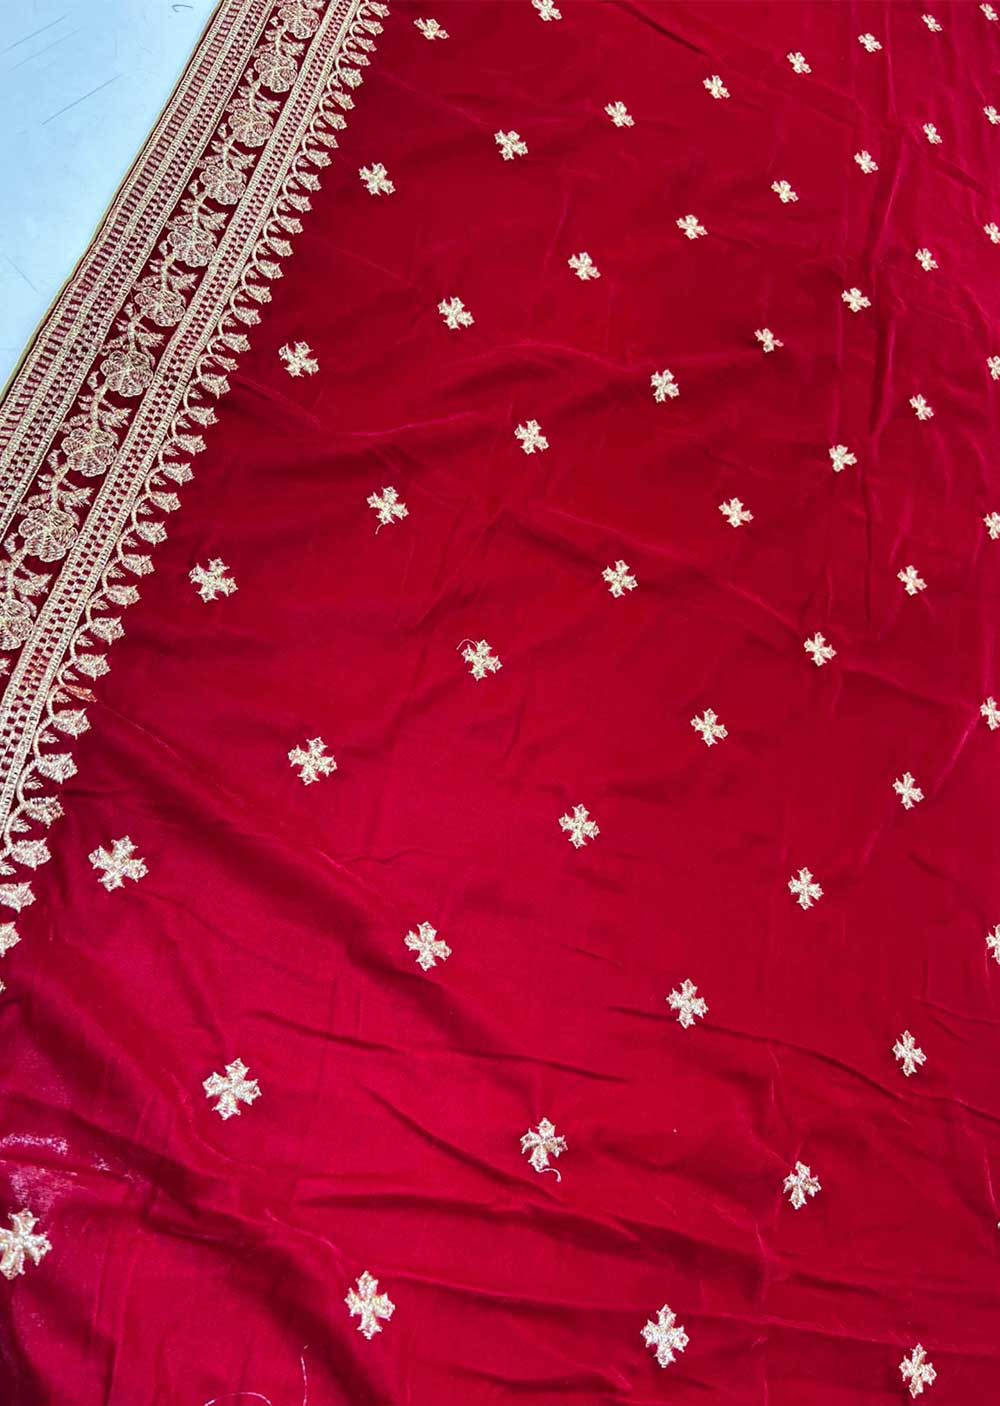 VLT-02 - Red - Embroidered Velvet Shawl - Memsaab Online